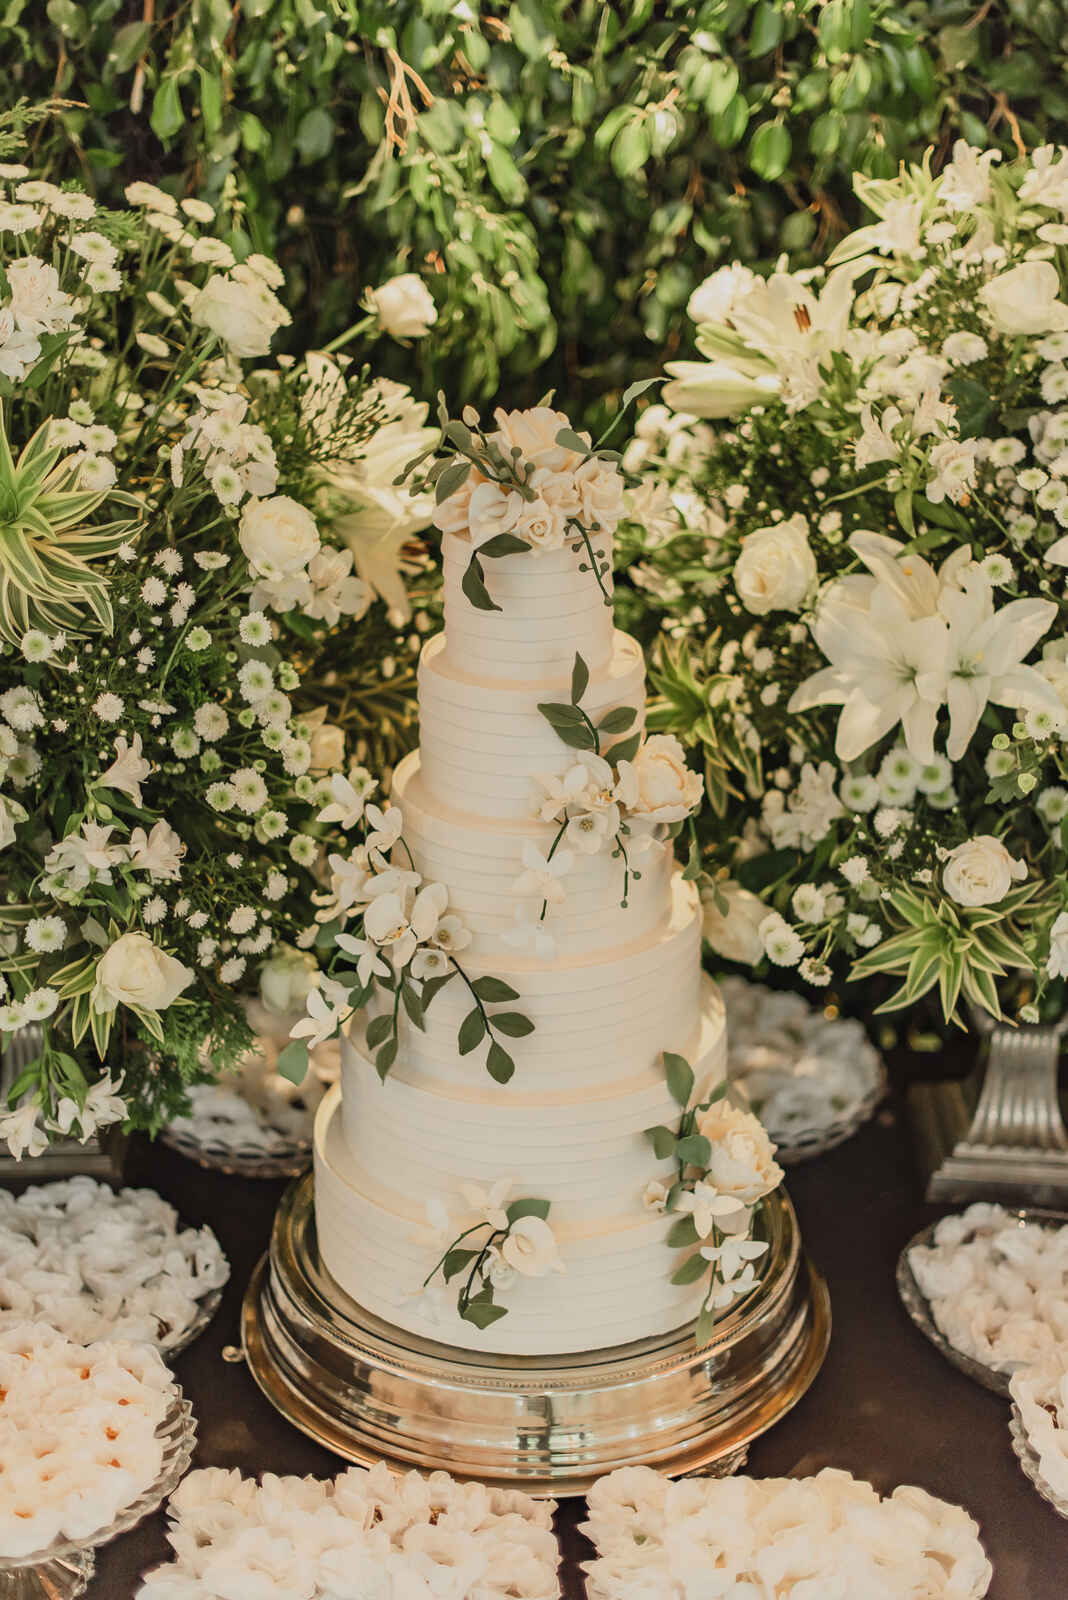 bolo de casamento clássico branco com seis andares decorado com rosas brancas